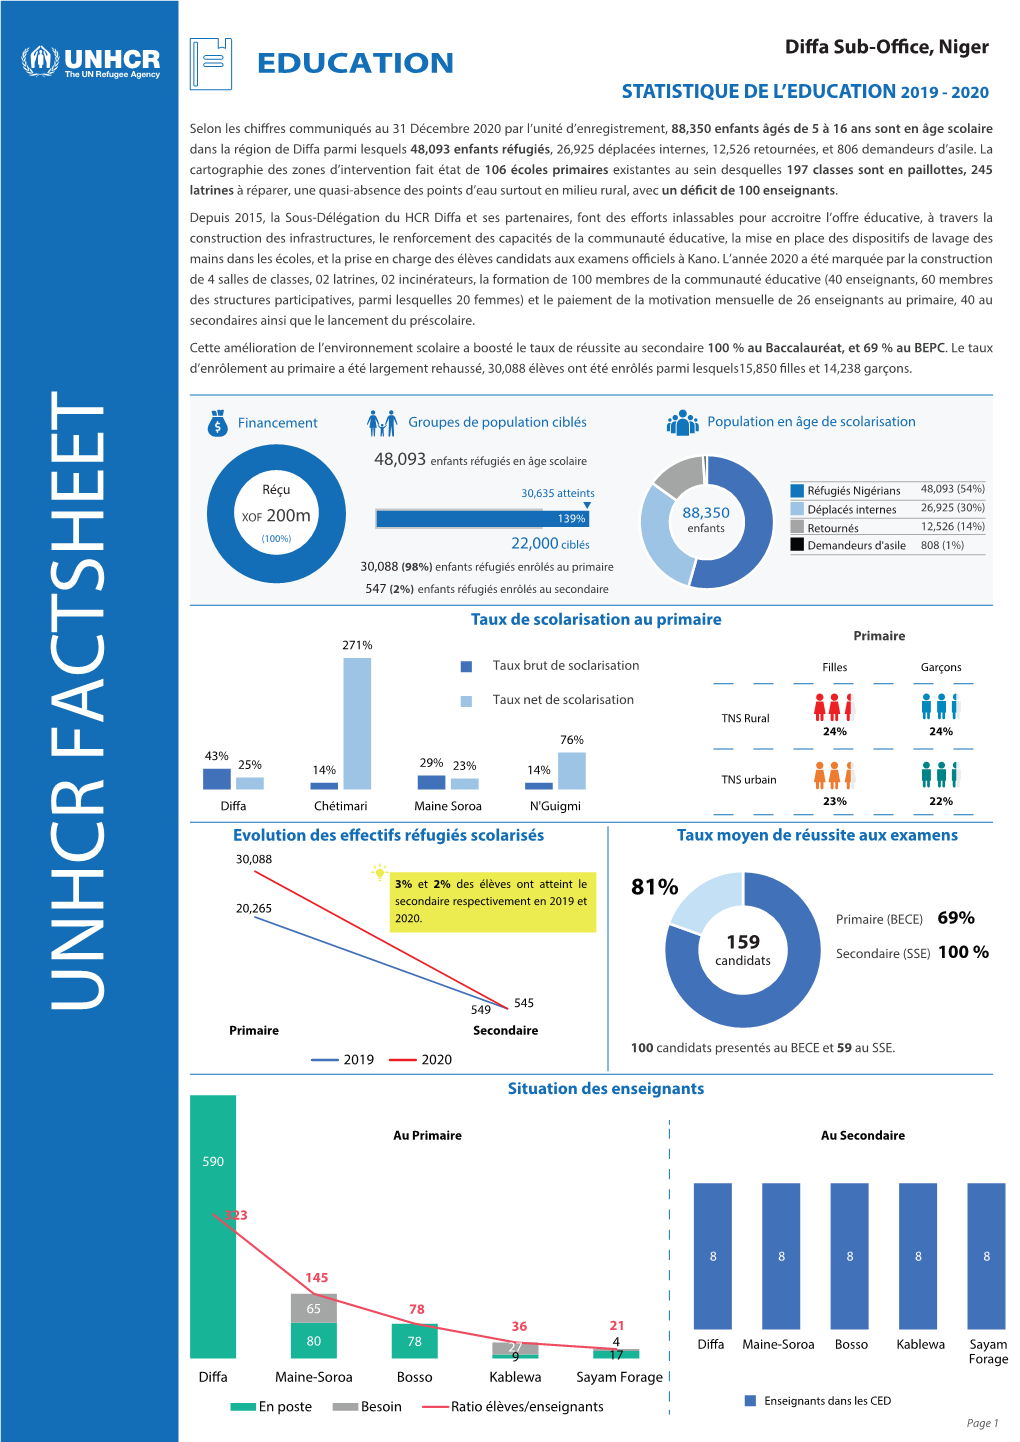 UNHCR FACTSHEET 549 Primaire Secondaire 100 Candidats Presentés Au BECE Et 59 Au SSE